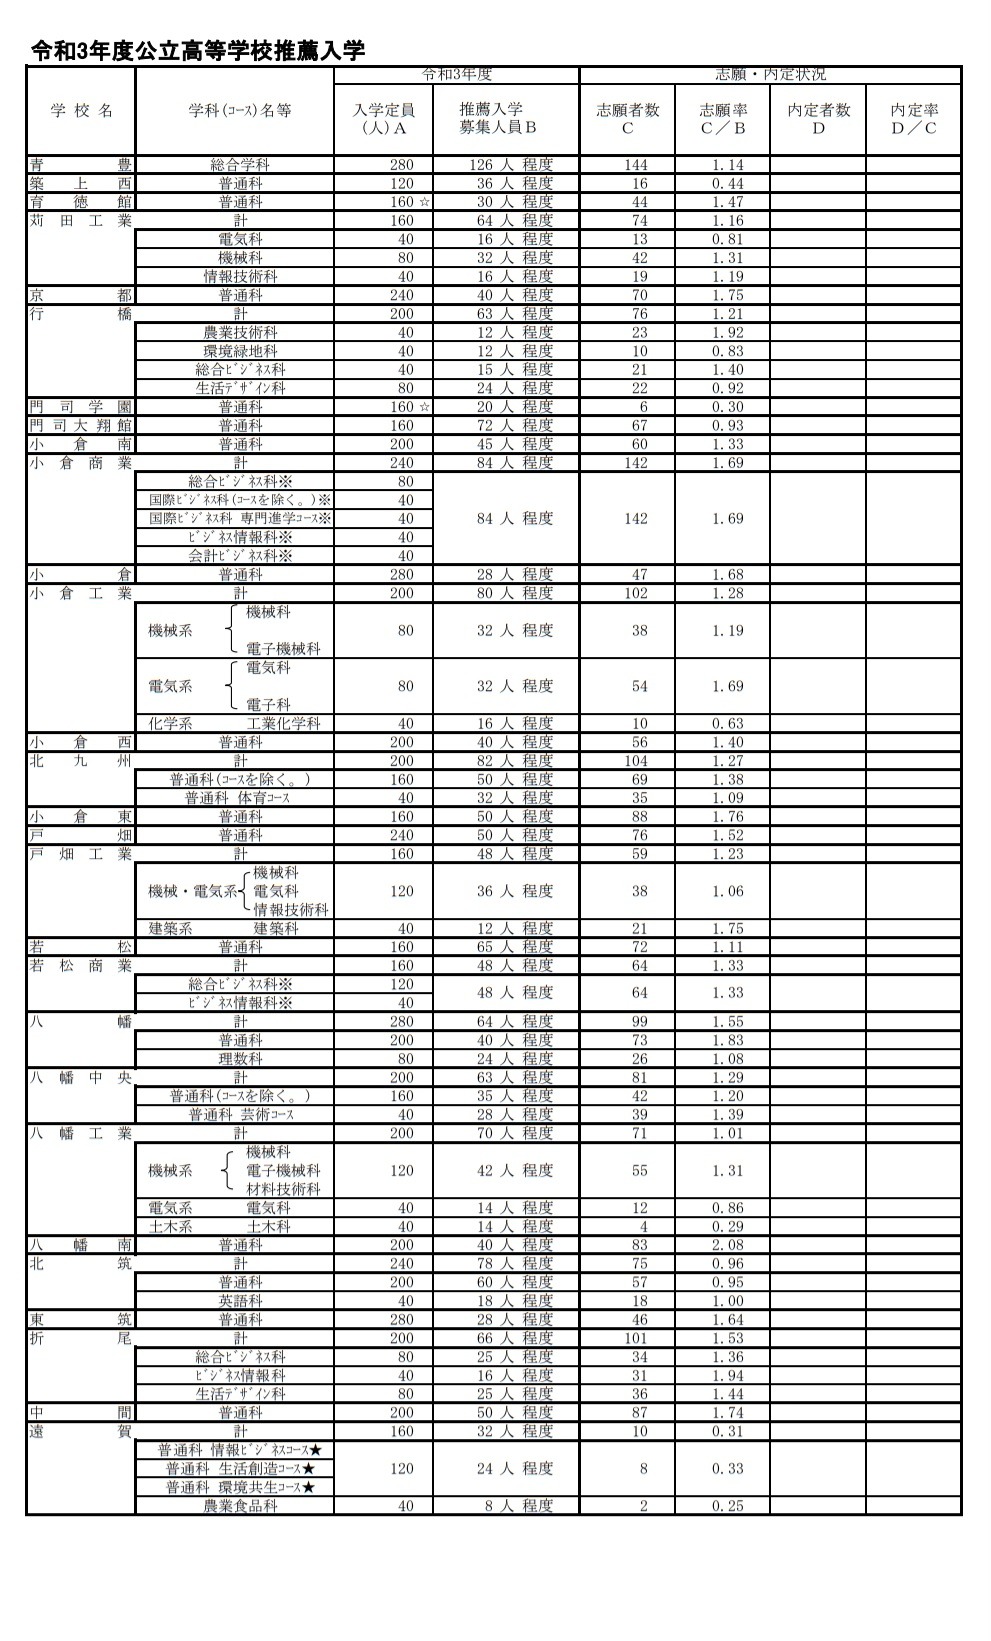 高校受験21 福岡県公立高 推薦入試の志願状況 倍率 確定 修猷館2 3倍 リセマム